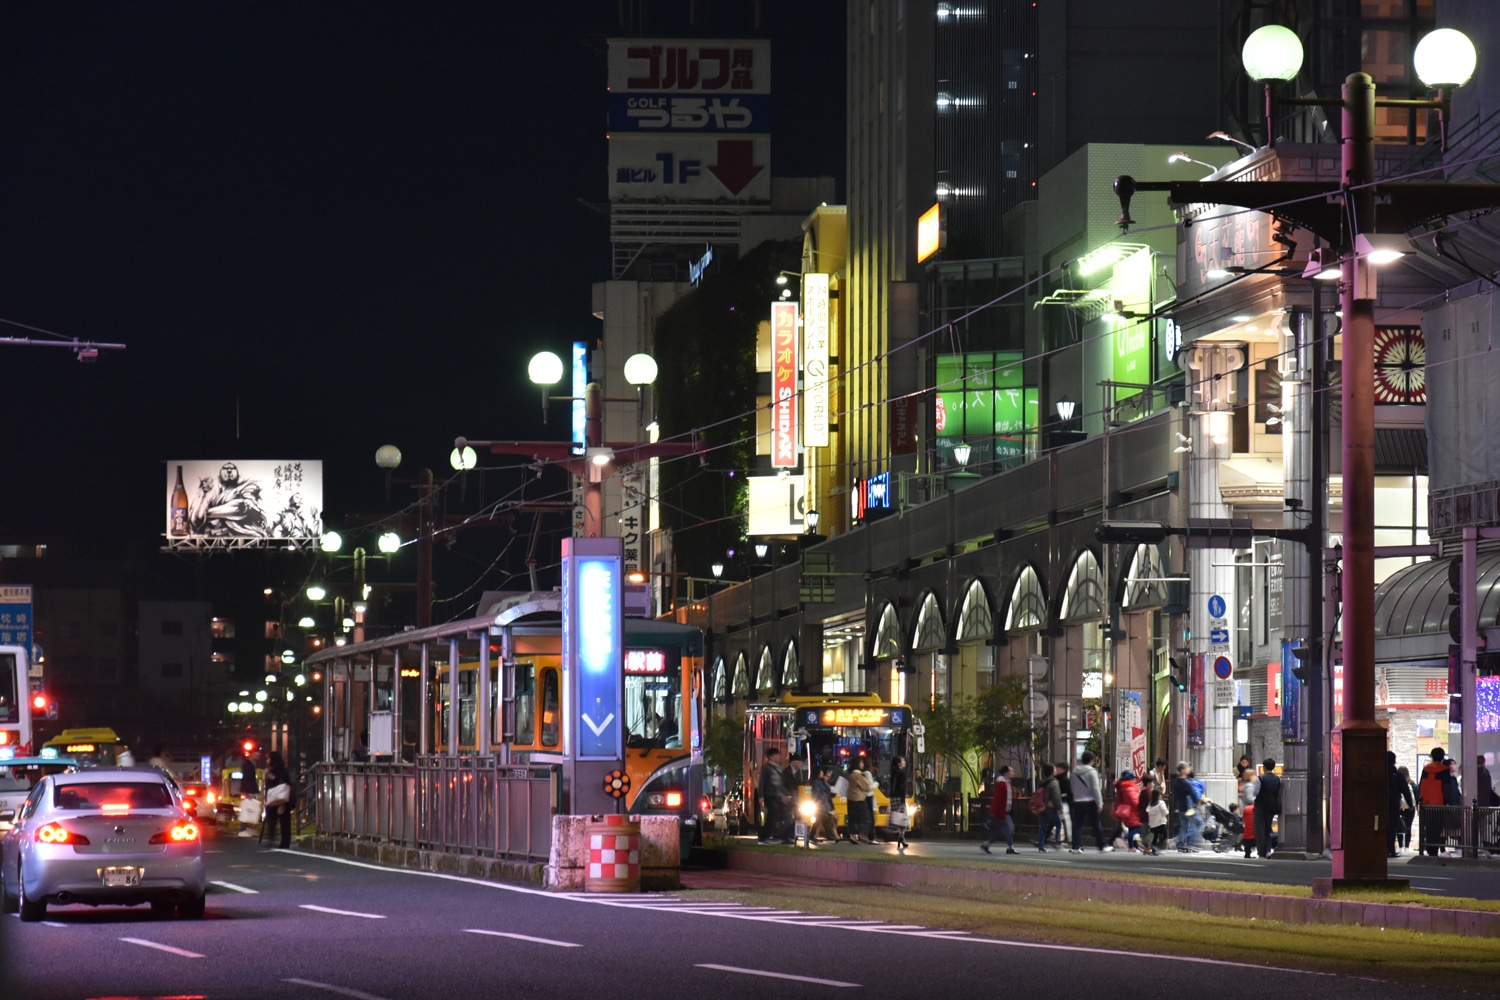 kagoshima-2019-rue-de-nuit